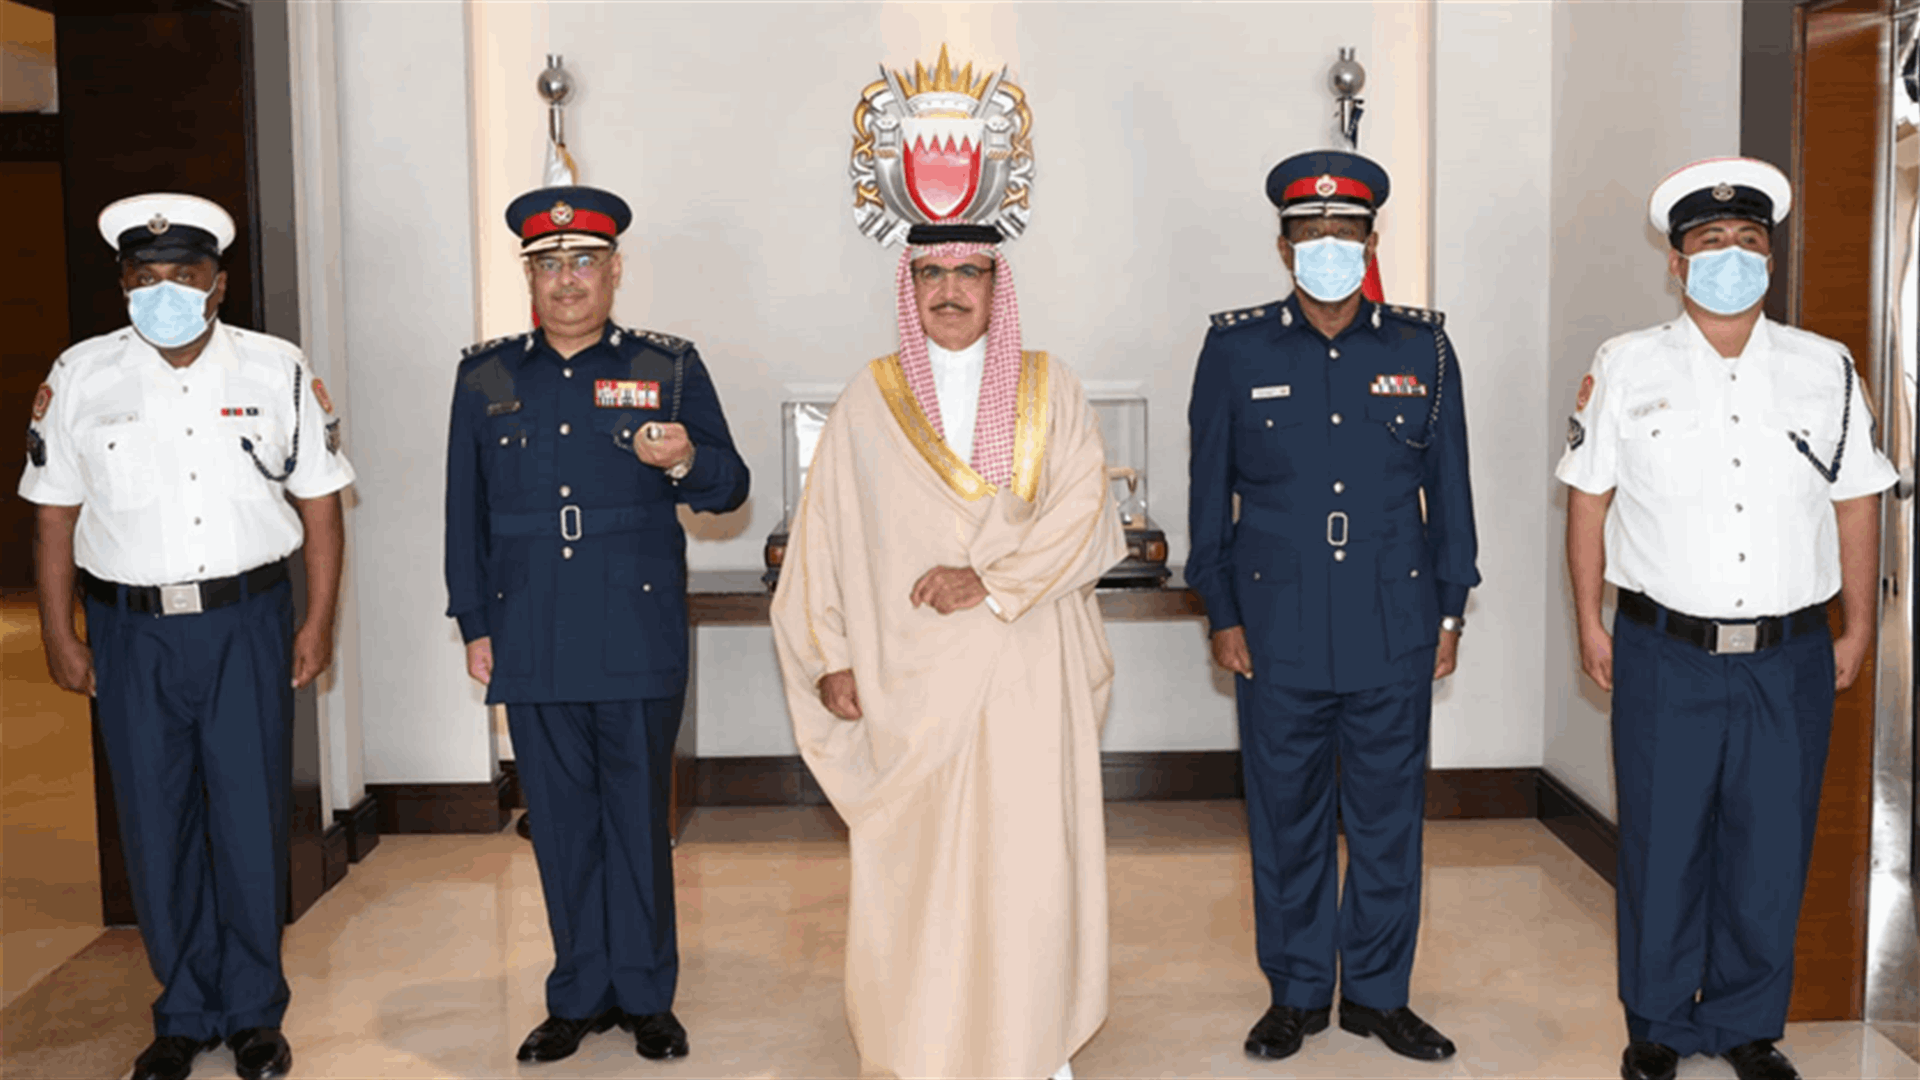 ترقية من وزير الداخلية البحريني لاثنين من رجال الدفاع المدني على أدائهما الاحترافي في إنقاذ رومان غروجان